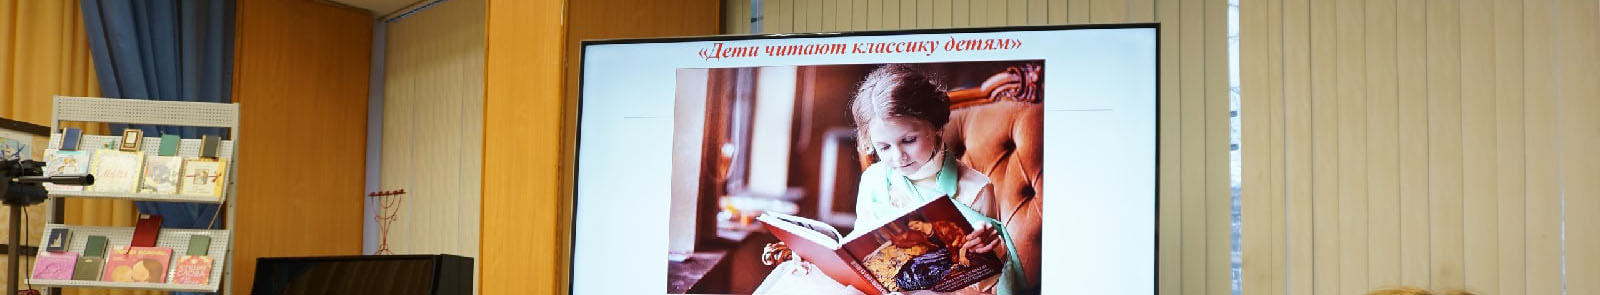 Итоги районного конкурса «Дети читают классику детям»